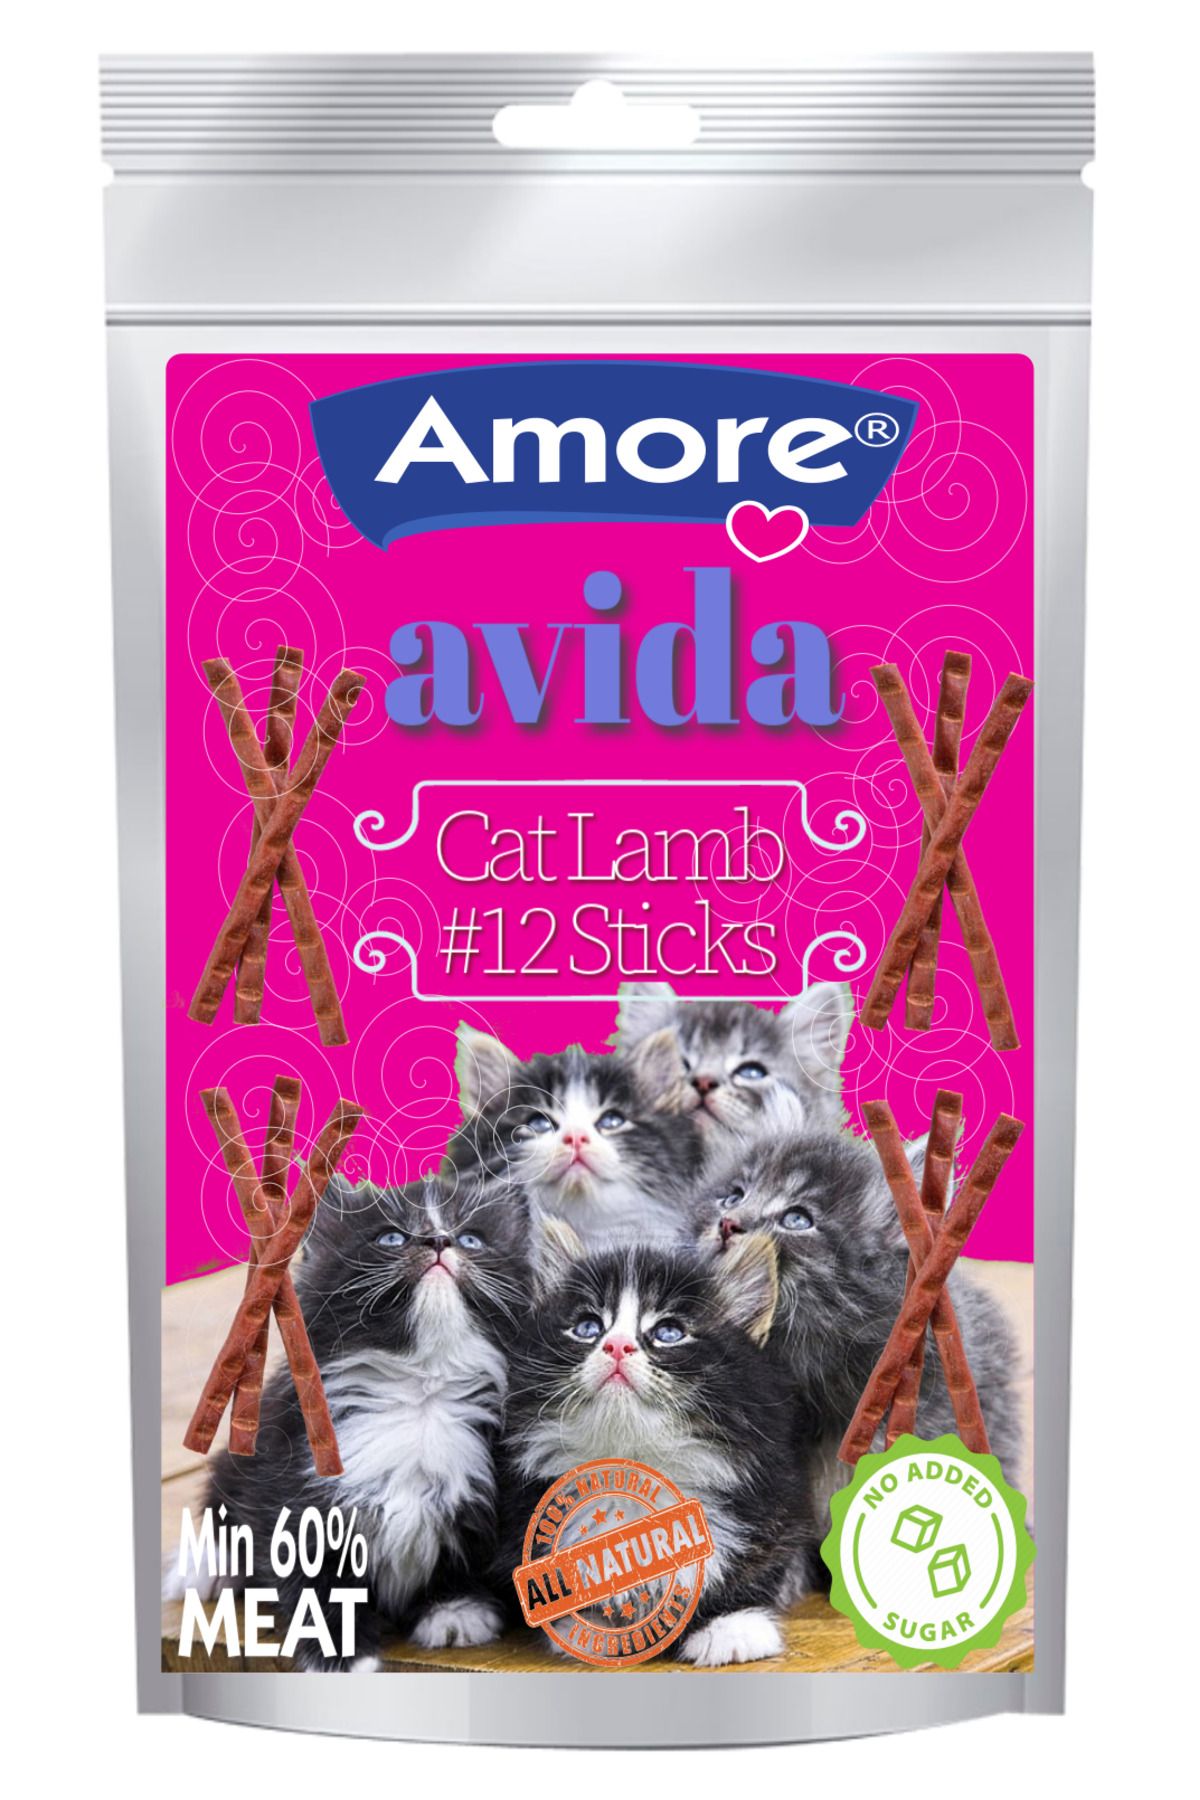 Amore Avida 12li Cat Lamb Sticks ve 6 adet 3lu Sigir Etli Kedi Odulu New Story